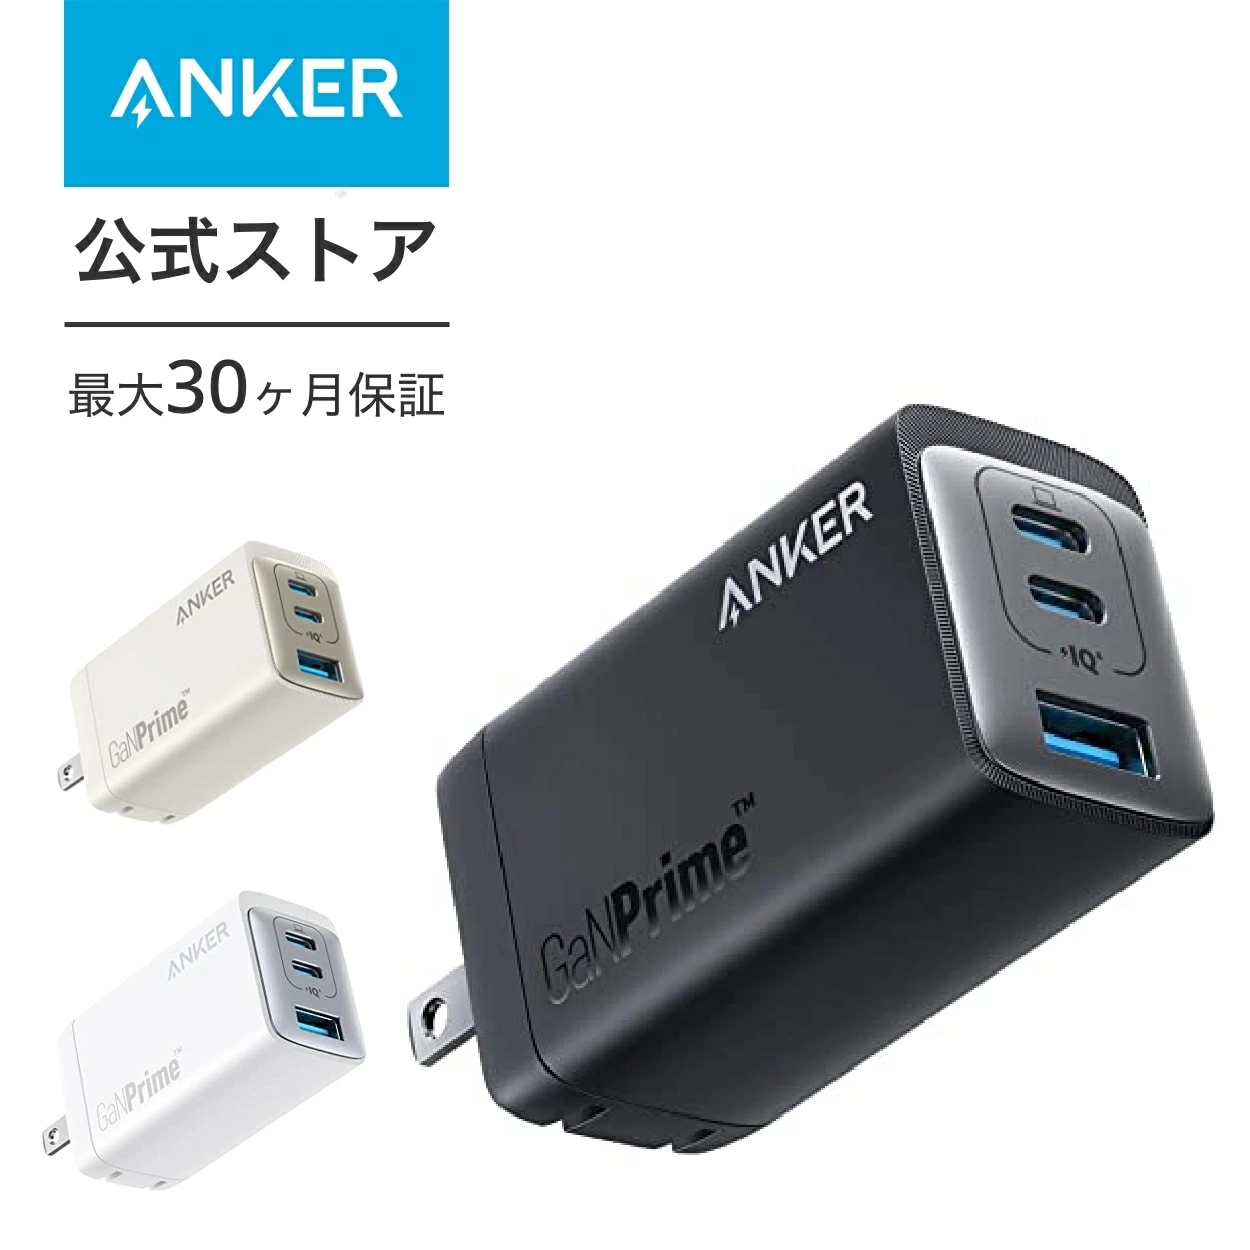 【楽天市場】Anker 737 Charger (GaNPrime 120W) (USB PD 充電器 